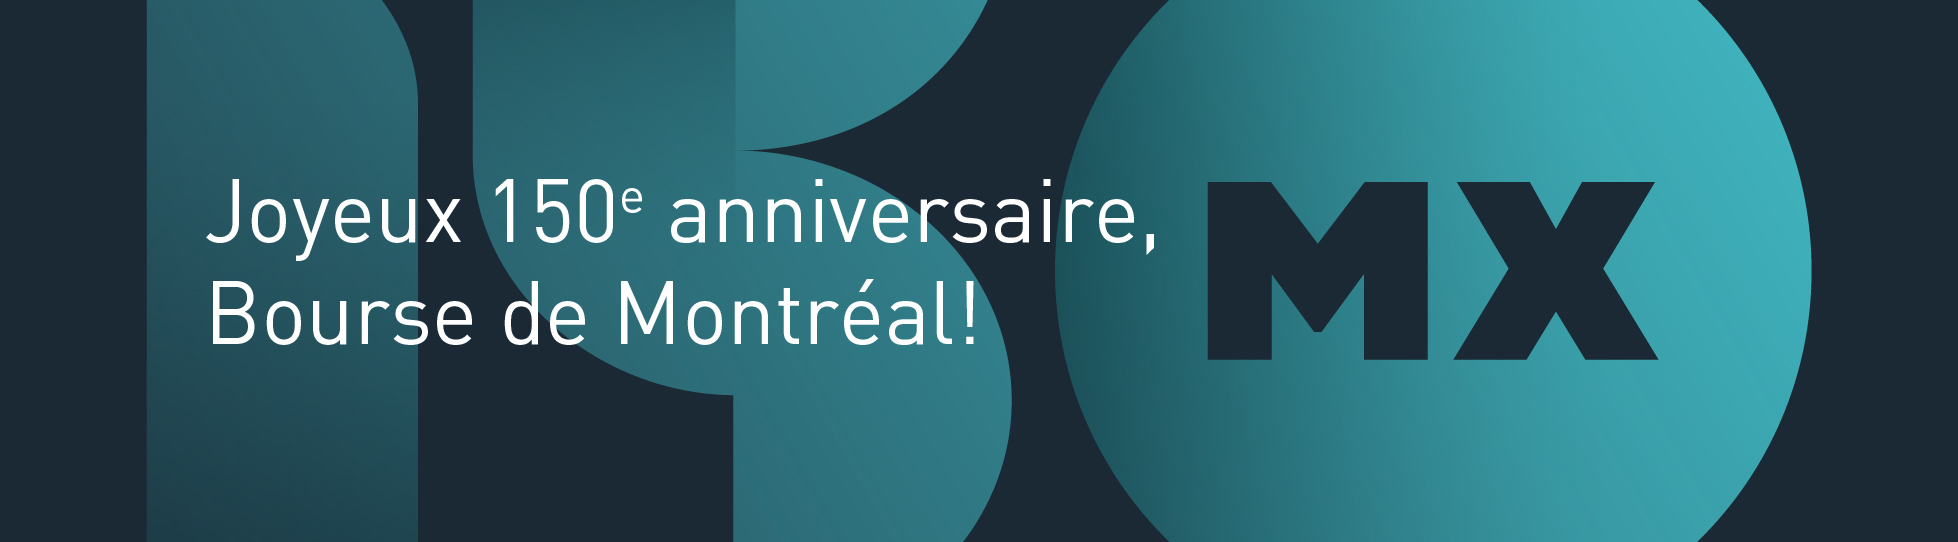 Joyeux 150e anniversaire, Bourse de Montréal!